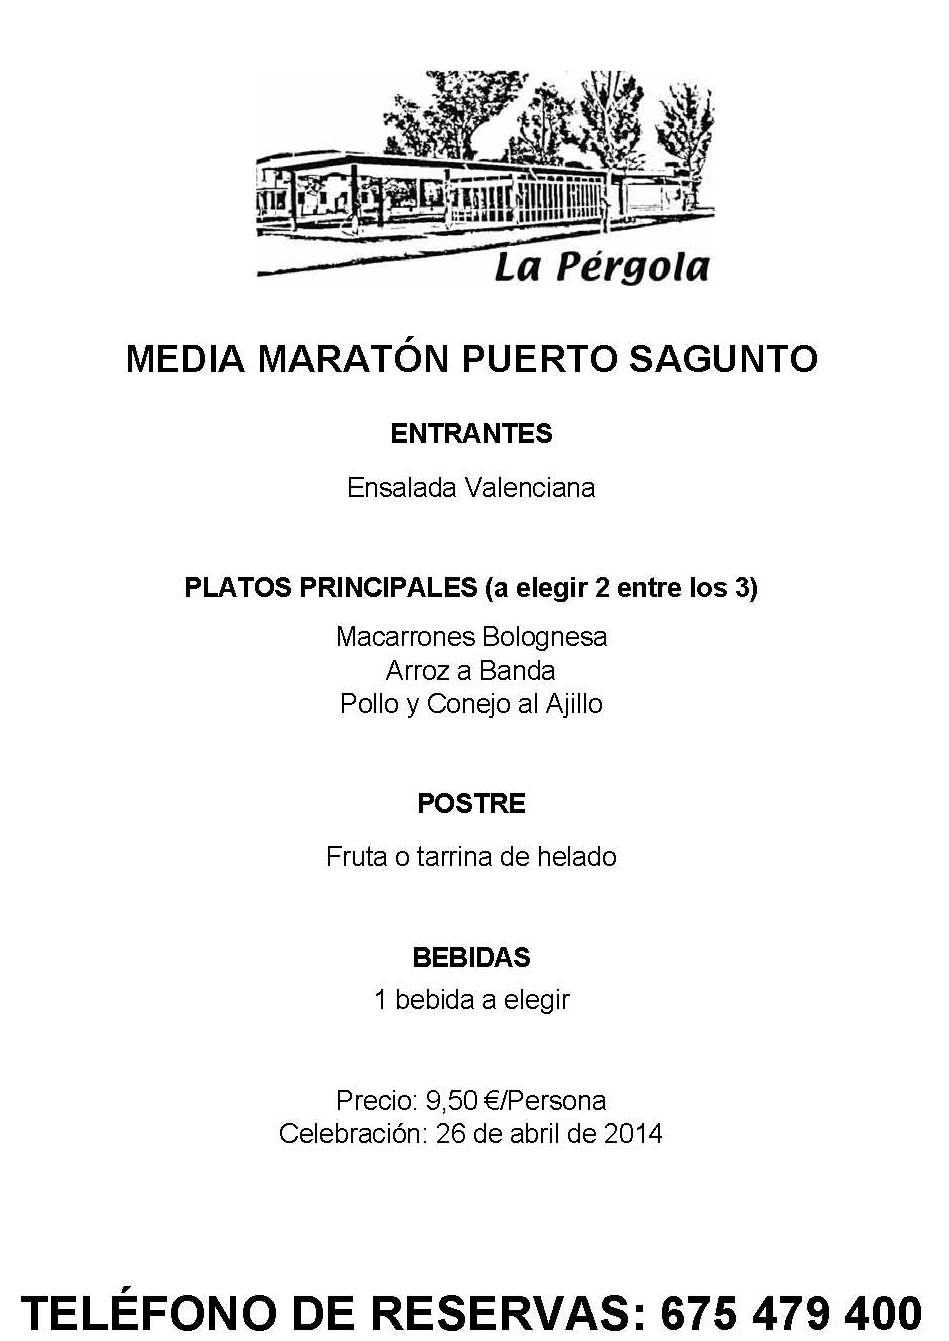 2014-04-26 Media Maratón